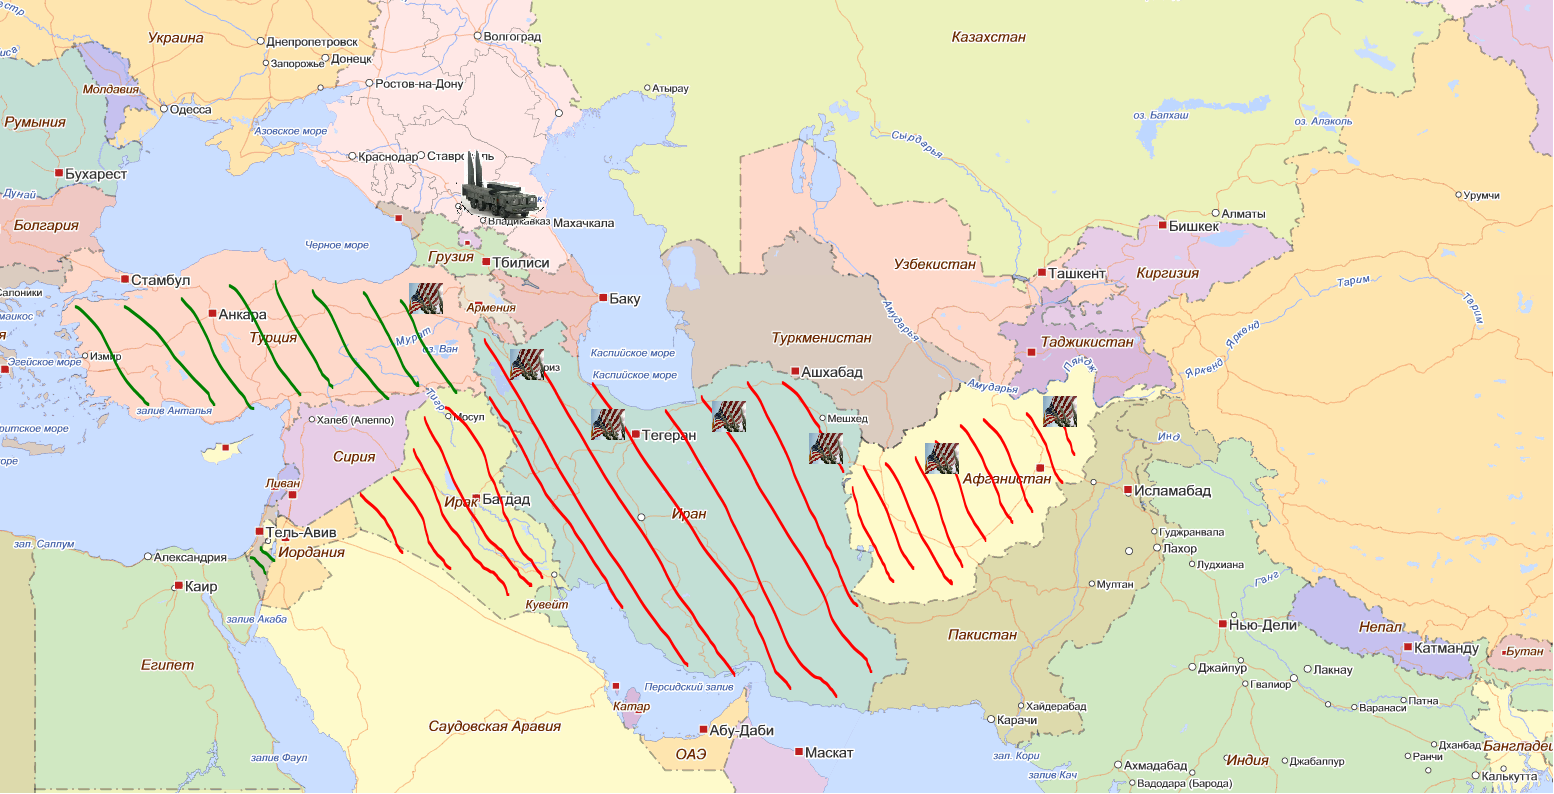 Карта боевых действий на Ближнем востоке.